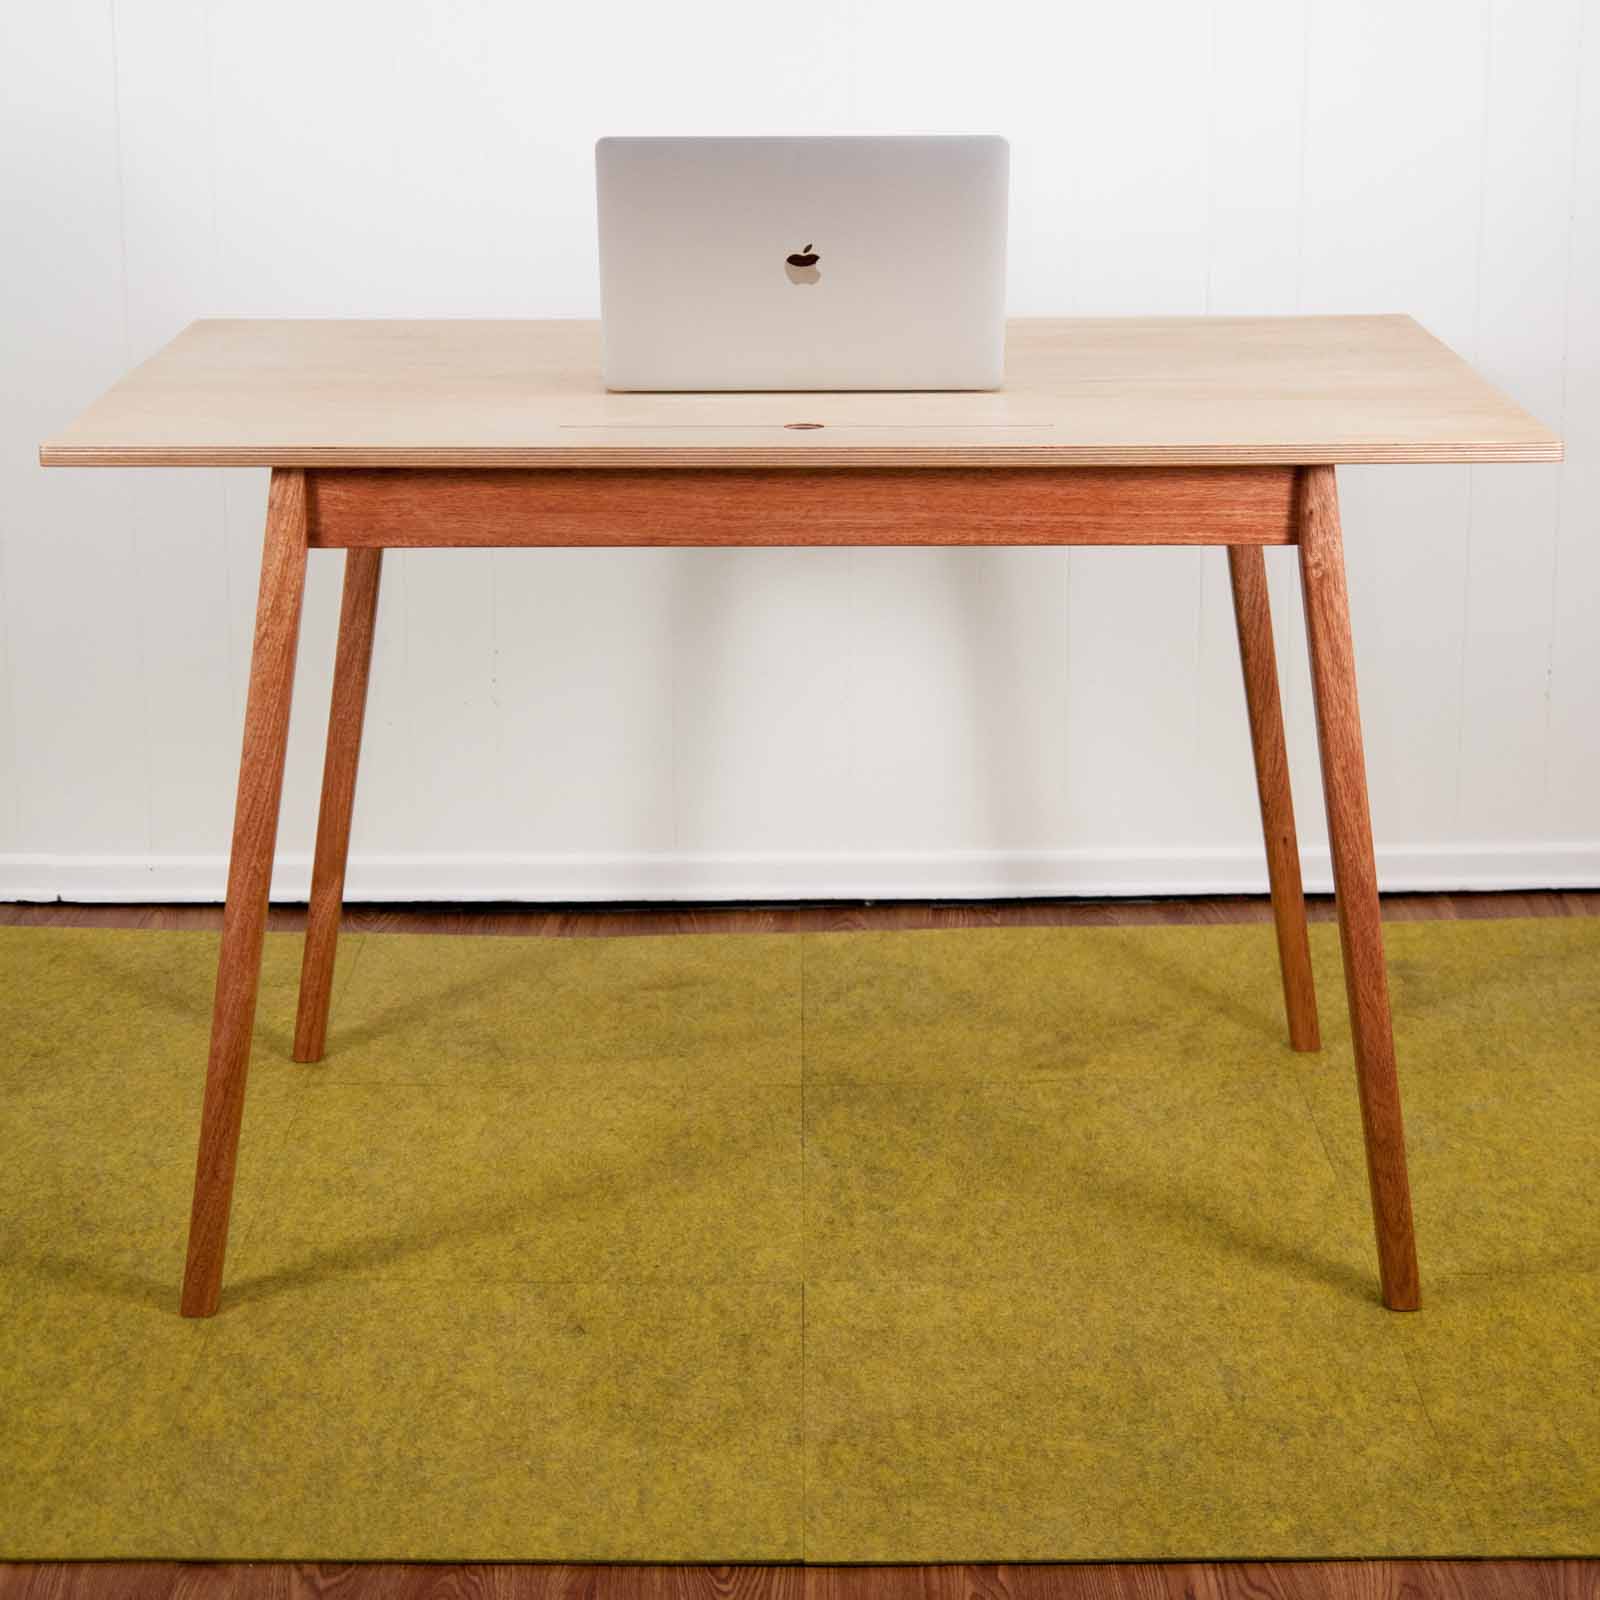 Desk v.2 with laptop